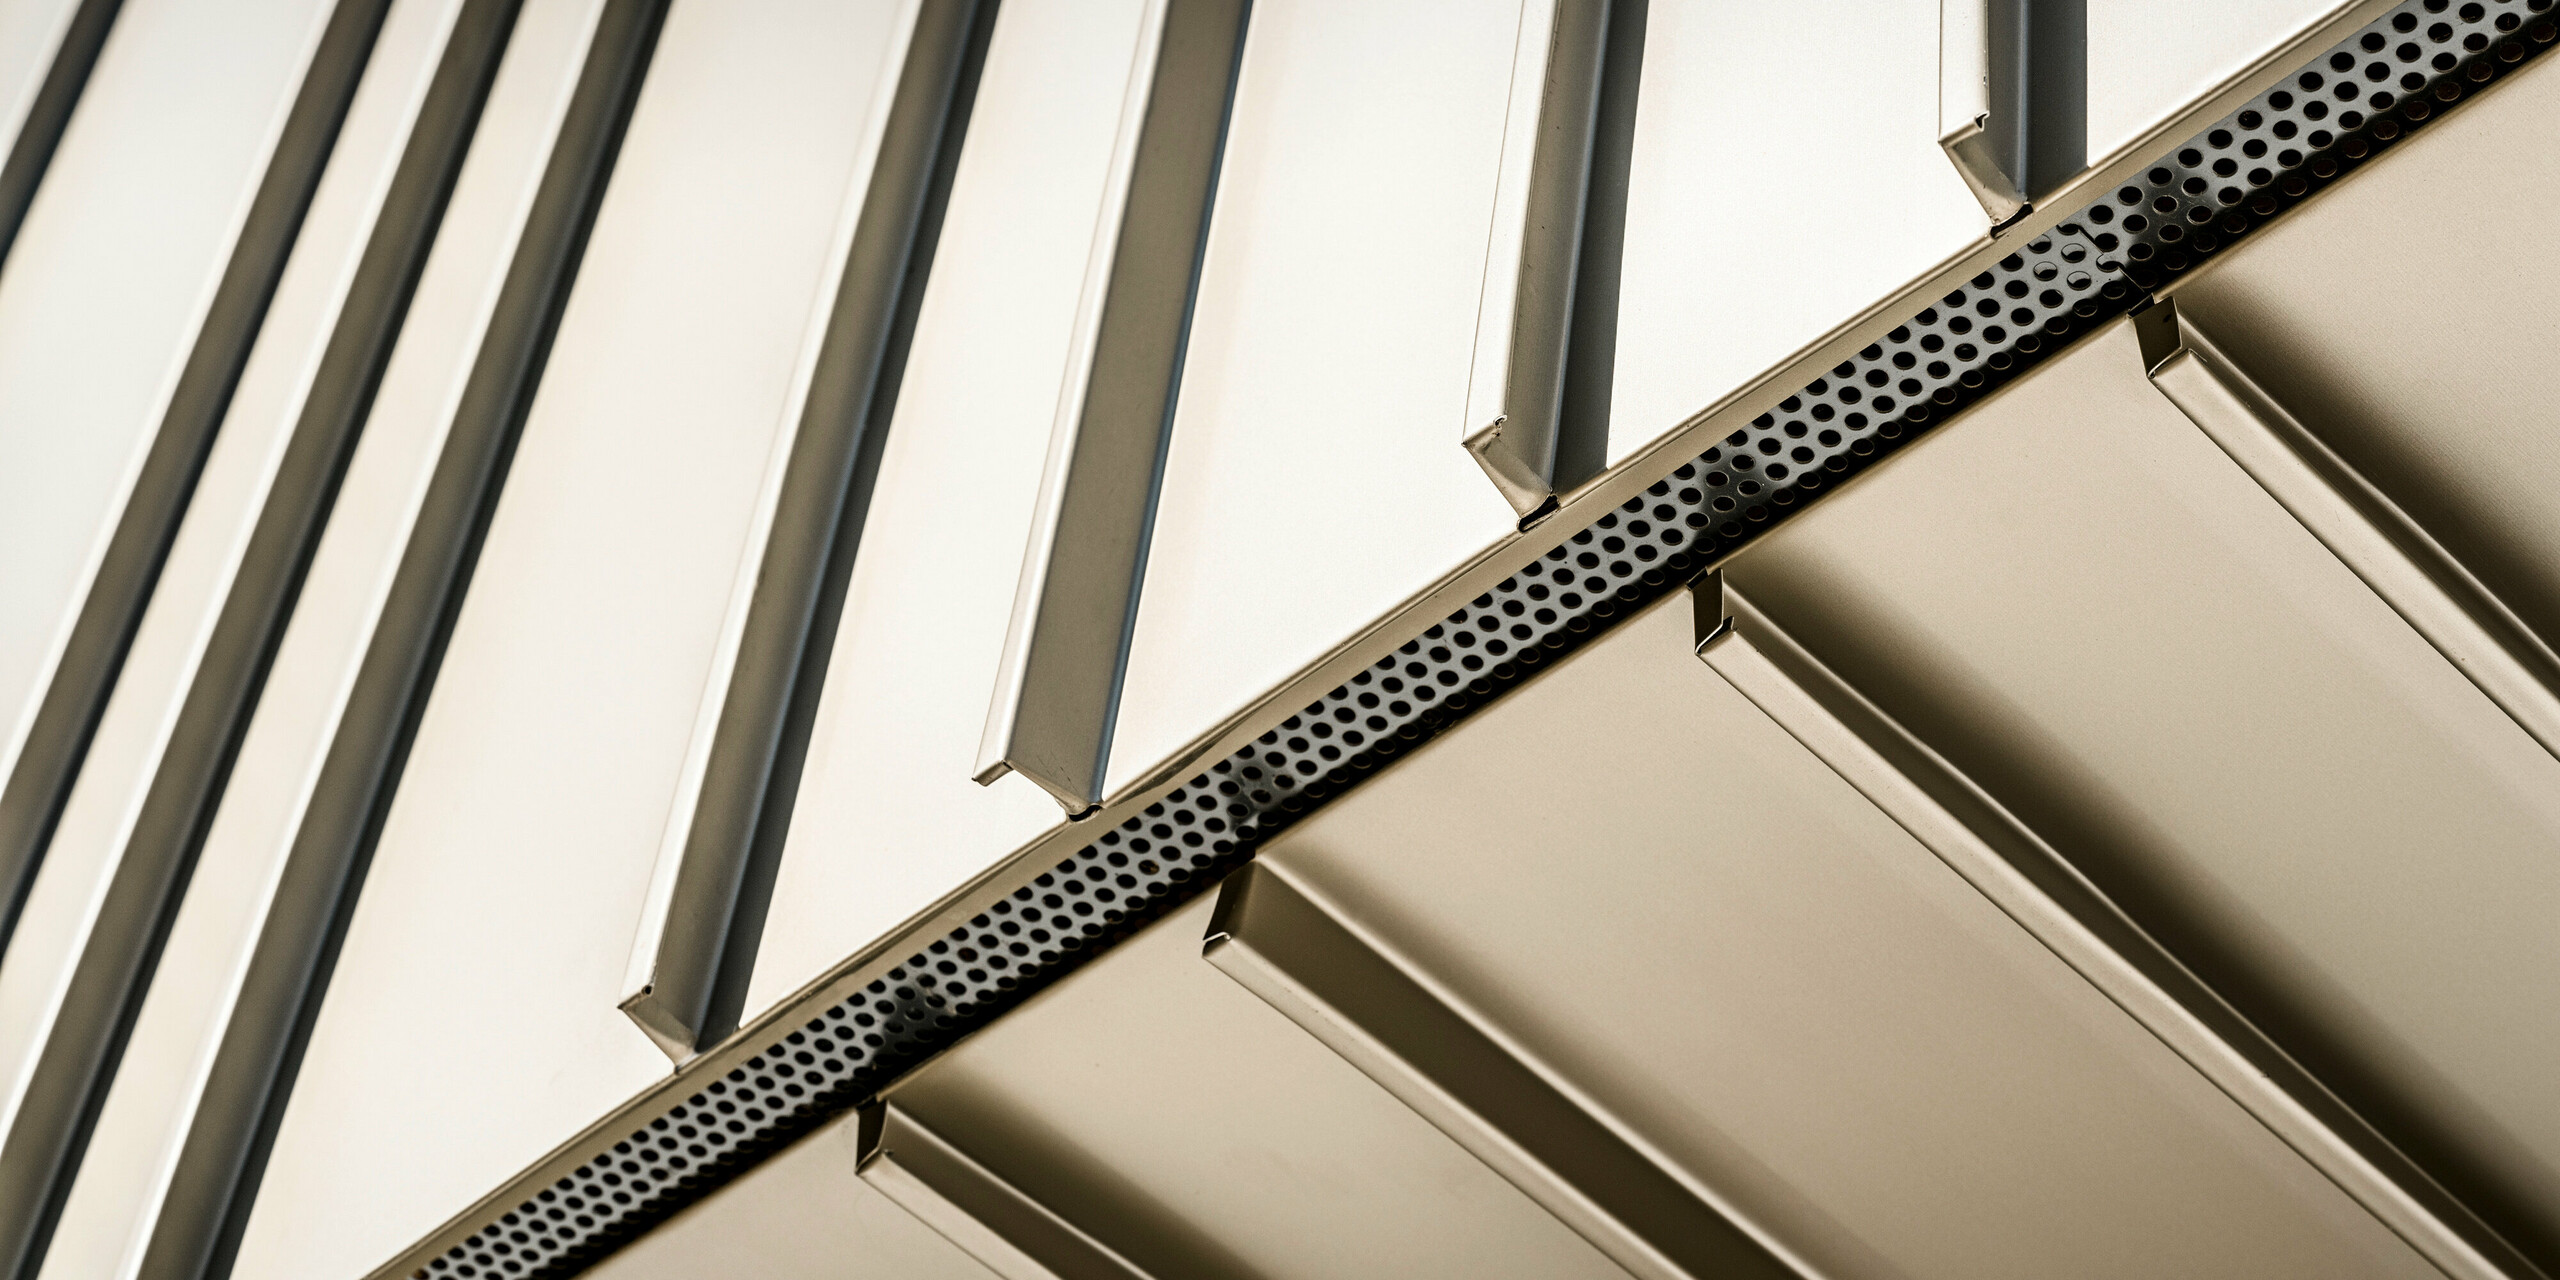 Detailaufnahme einer innovativen PREFA Aluminiumfassade in der Farbe Lichtbronze. Die vertikale Winkelstehfalzdeckung und die präzise Kantenführung unterstreichen die hervorragende Verarbeitung. Die sichtbaren Perforationen sorgen für eine moderne Optik und bieten zudem auch funktionale Vorteile, wie verbesserte Belüftung. Diese Komponenten spiegeln die technische Raffinesse und das ökologische Bewusstsein von Aluminium als Baumaterial wider.